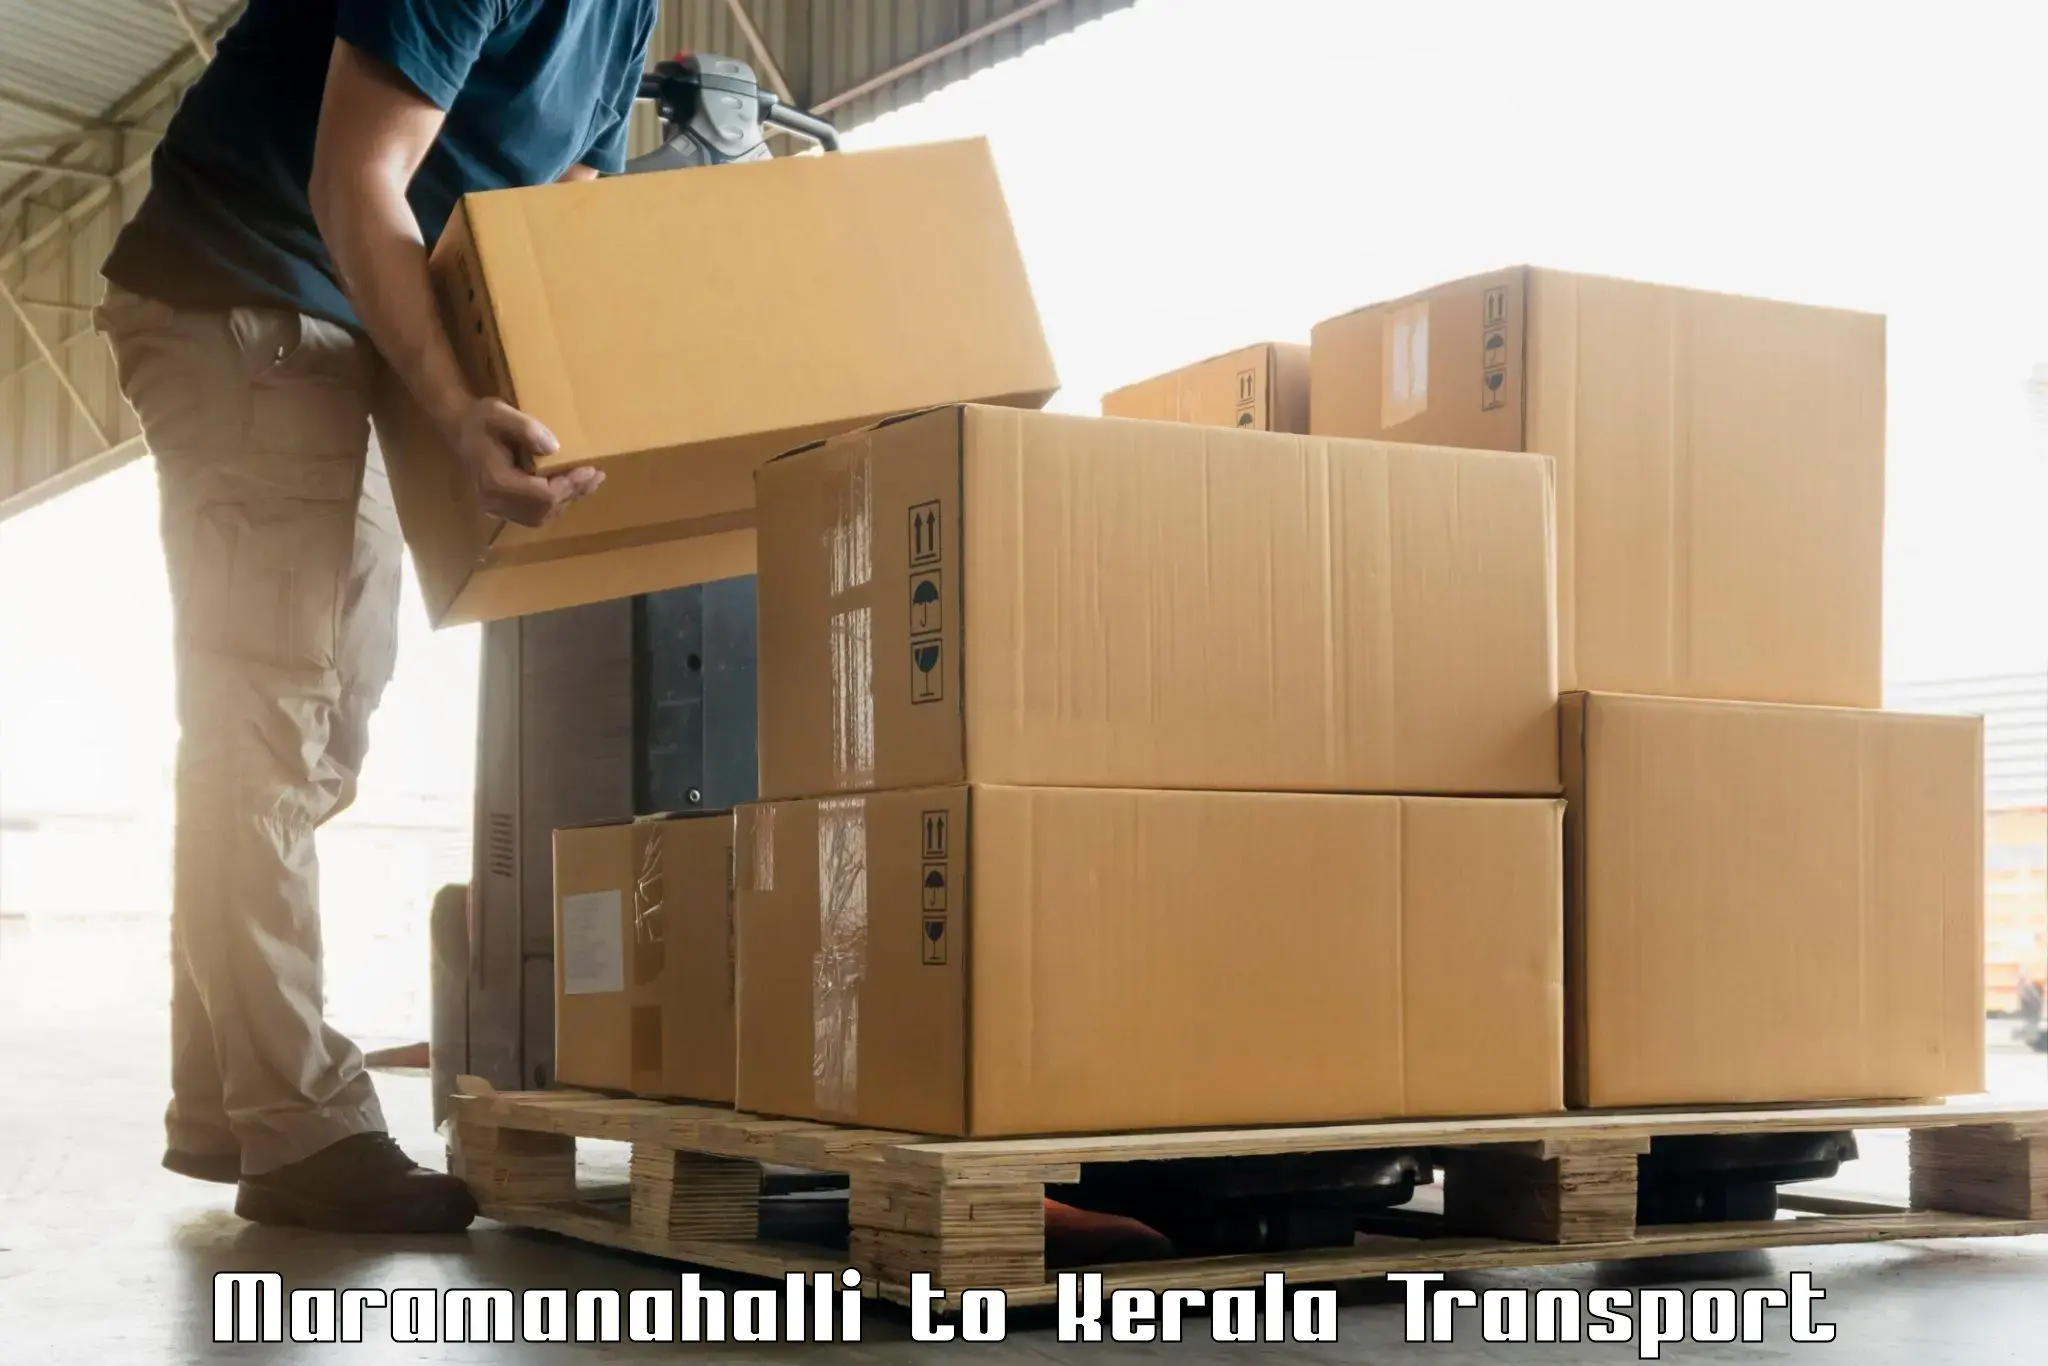 Two wheeler parcel service Maramanahalli to Taliparamba